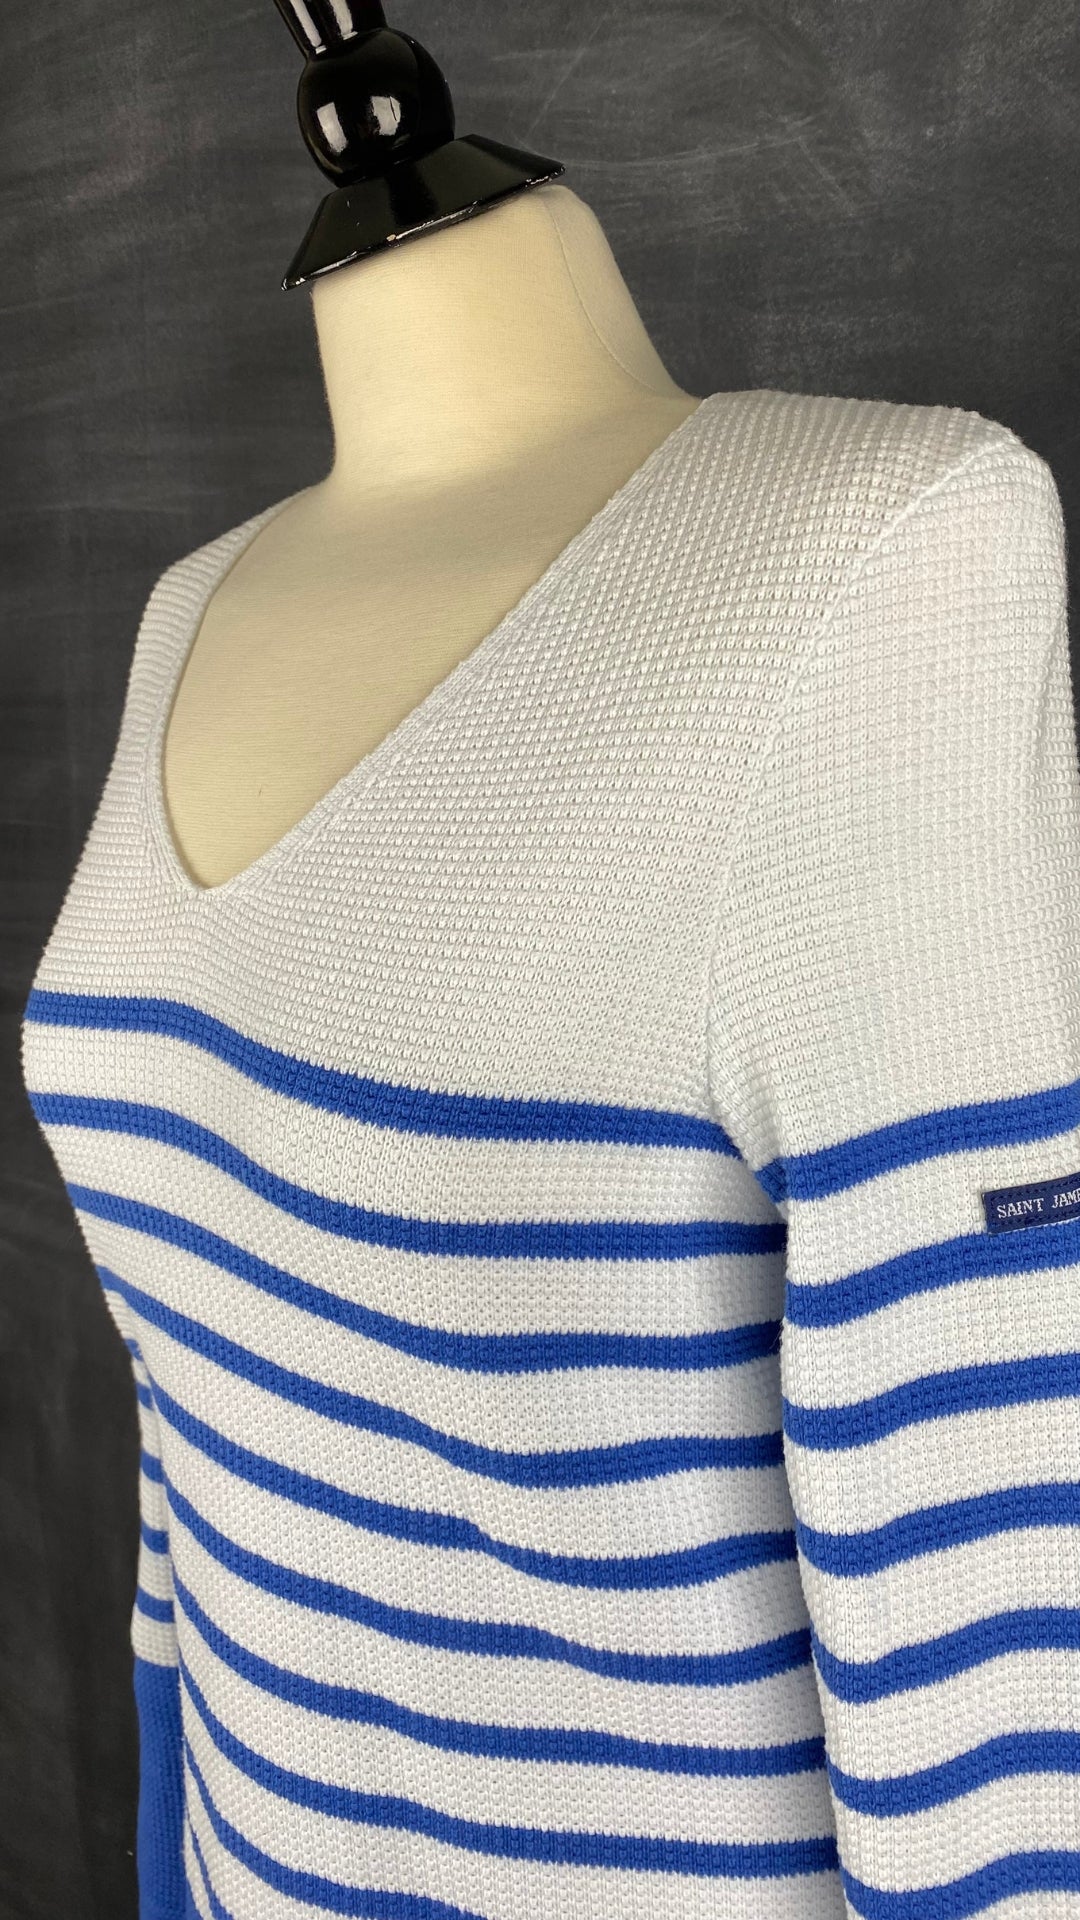 Chandail marinière en tricot de coton à rayures bleues Saint James, taille 6 (small). Vue de l'encolure.